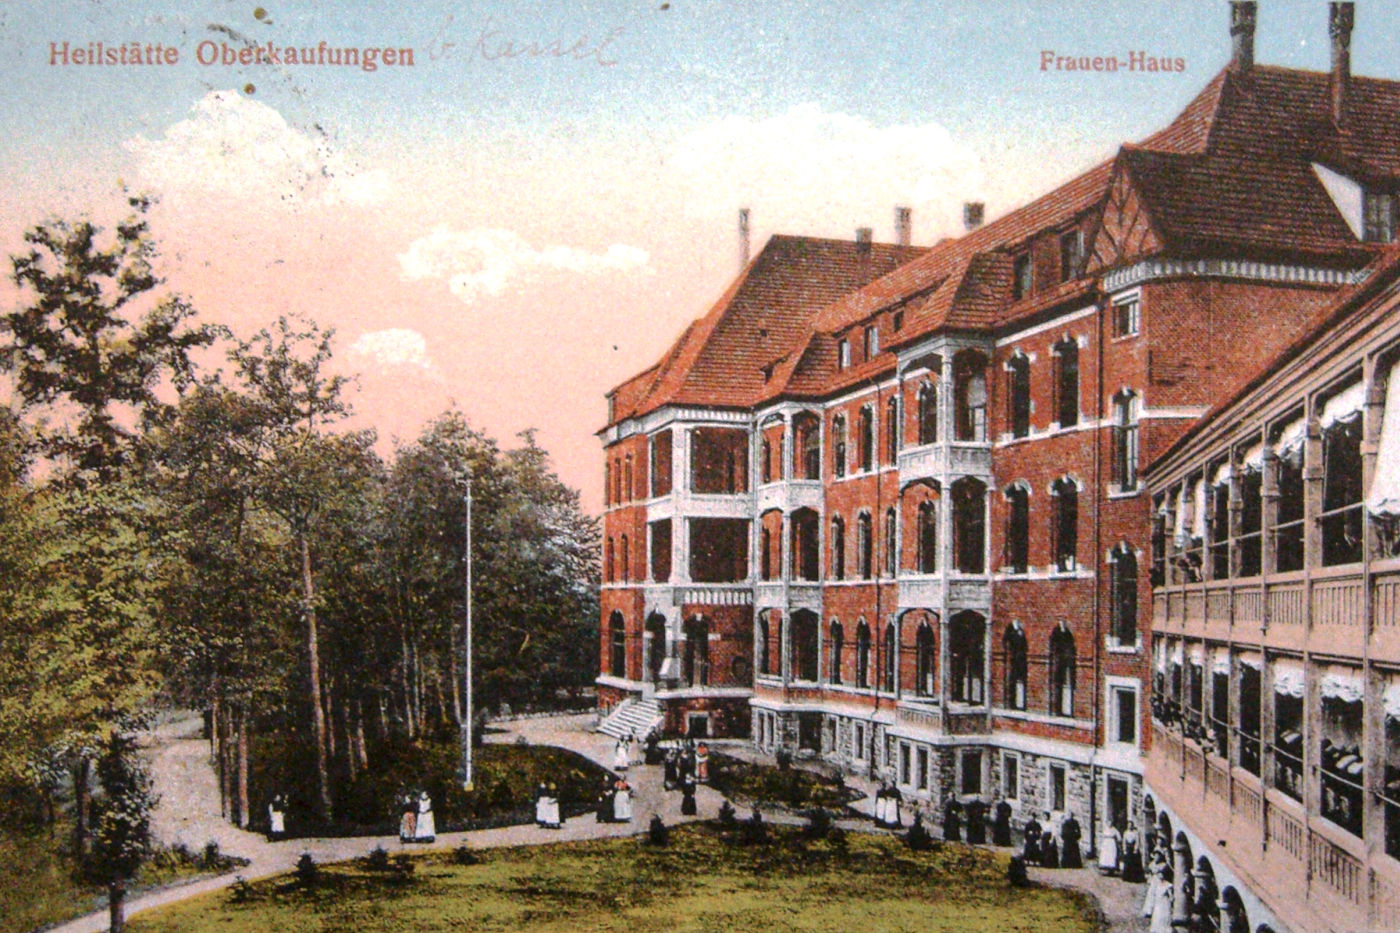 Frauenhaus mit offenen Liegehallen, erbaut 1910